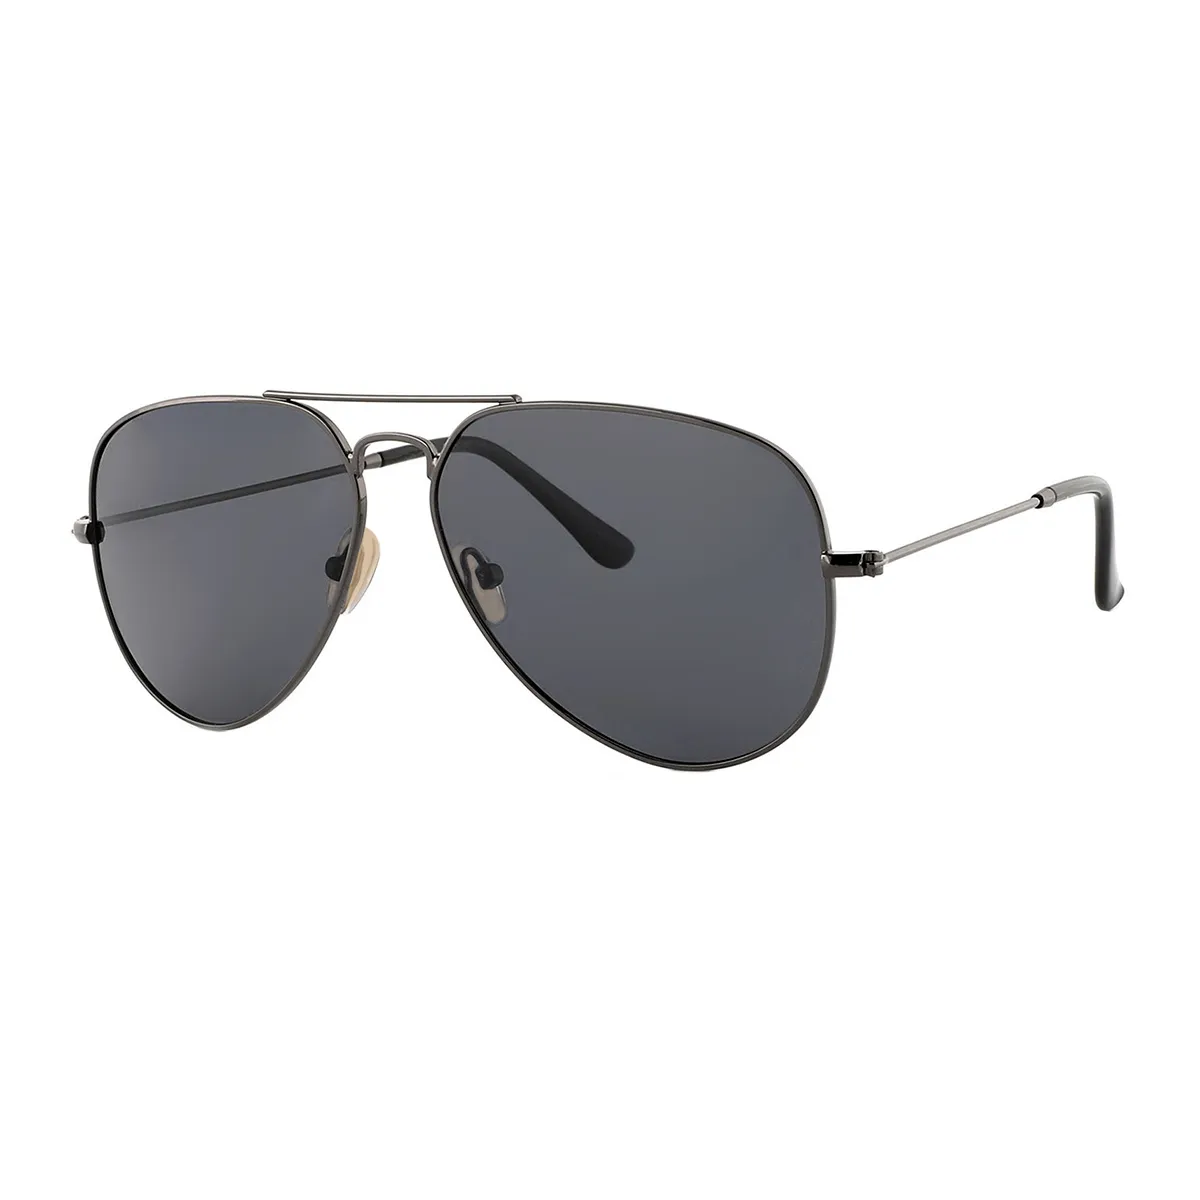 Quinn - Aviator Black Sunglasses for Men & Women